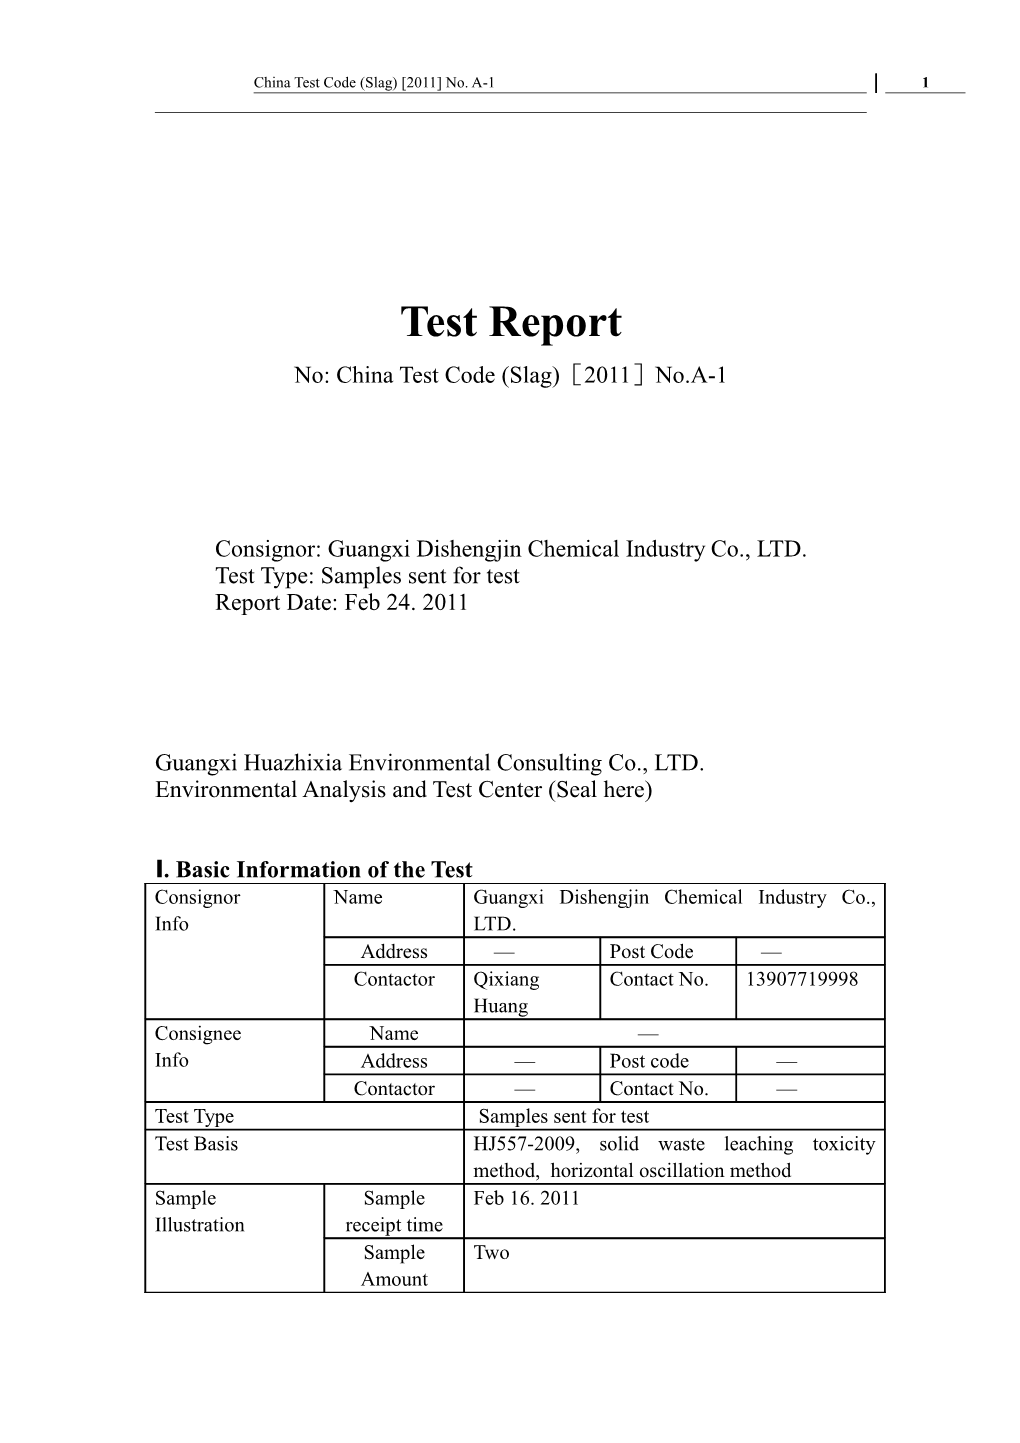 China Test Code (Slag) 2011 No. A-1